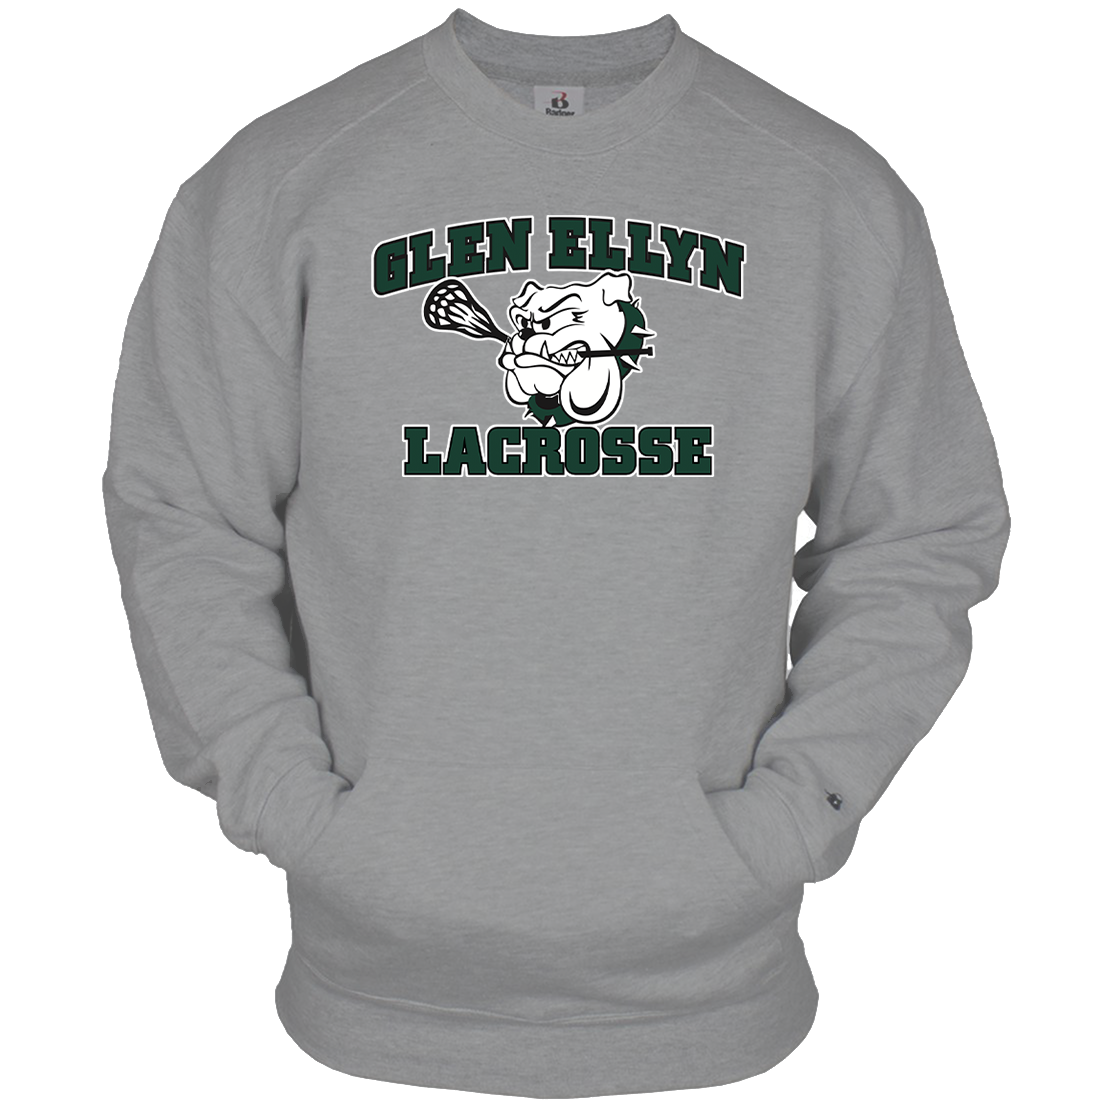 Glen Ellyn Bulldogs Lacrosse Pocket Crew